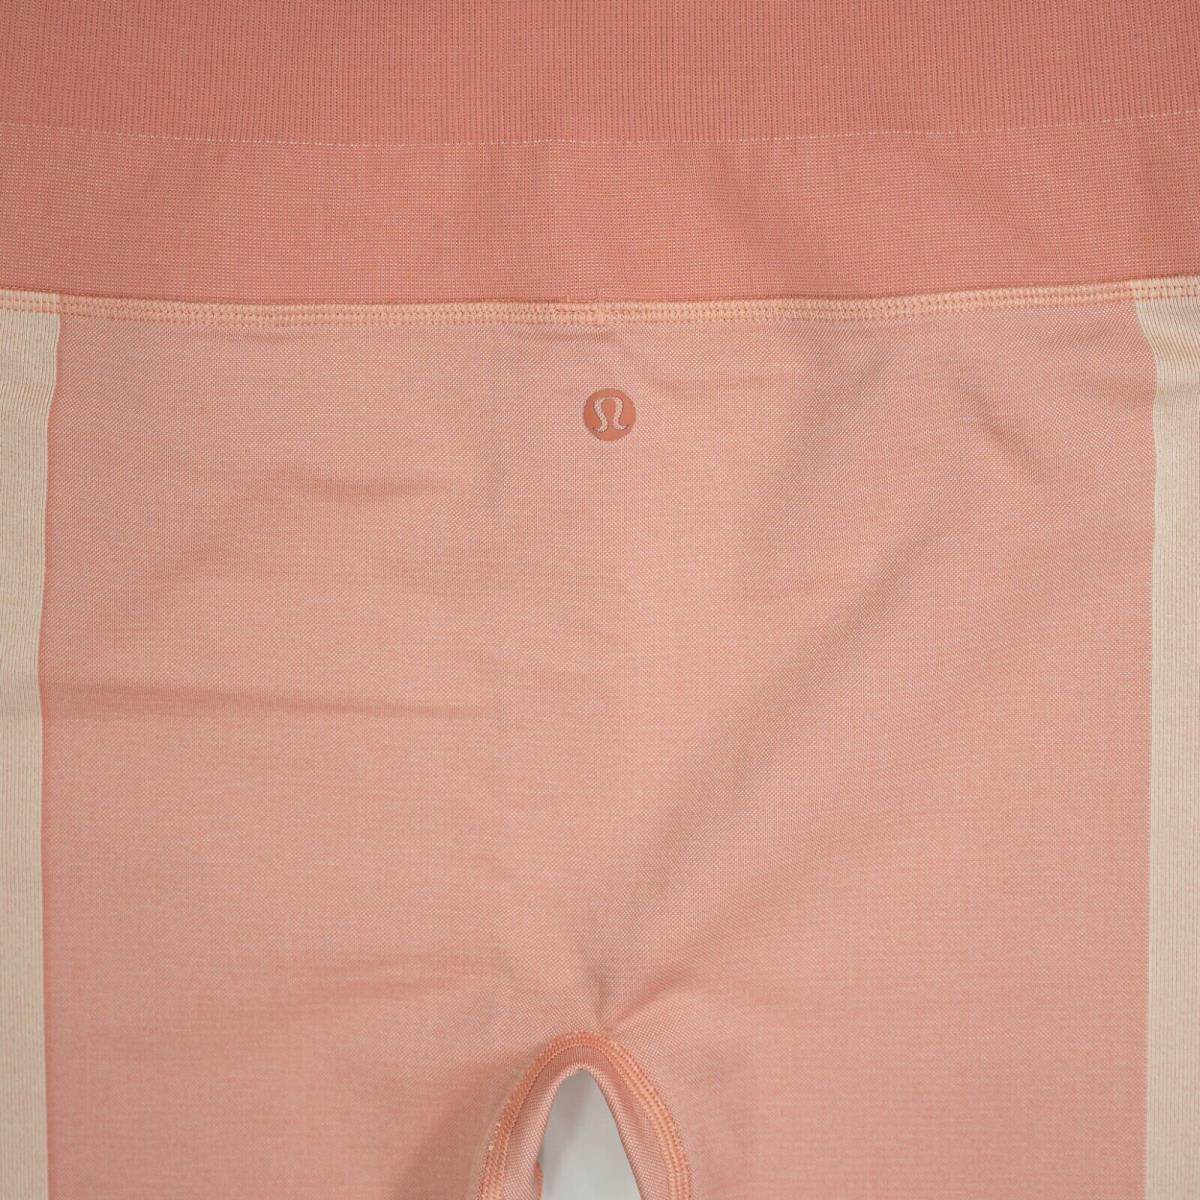 Lululemon clothing  - Pink 2